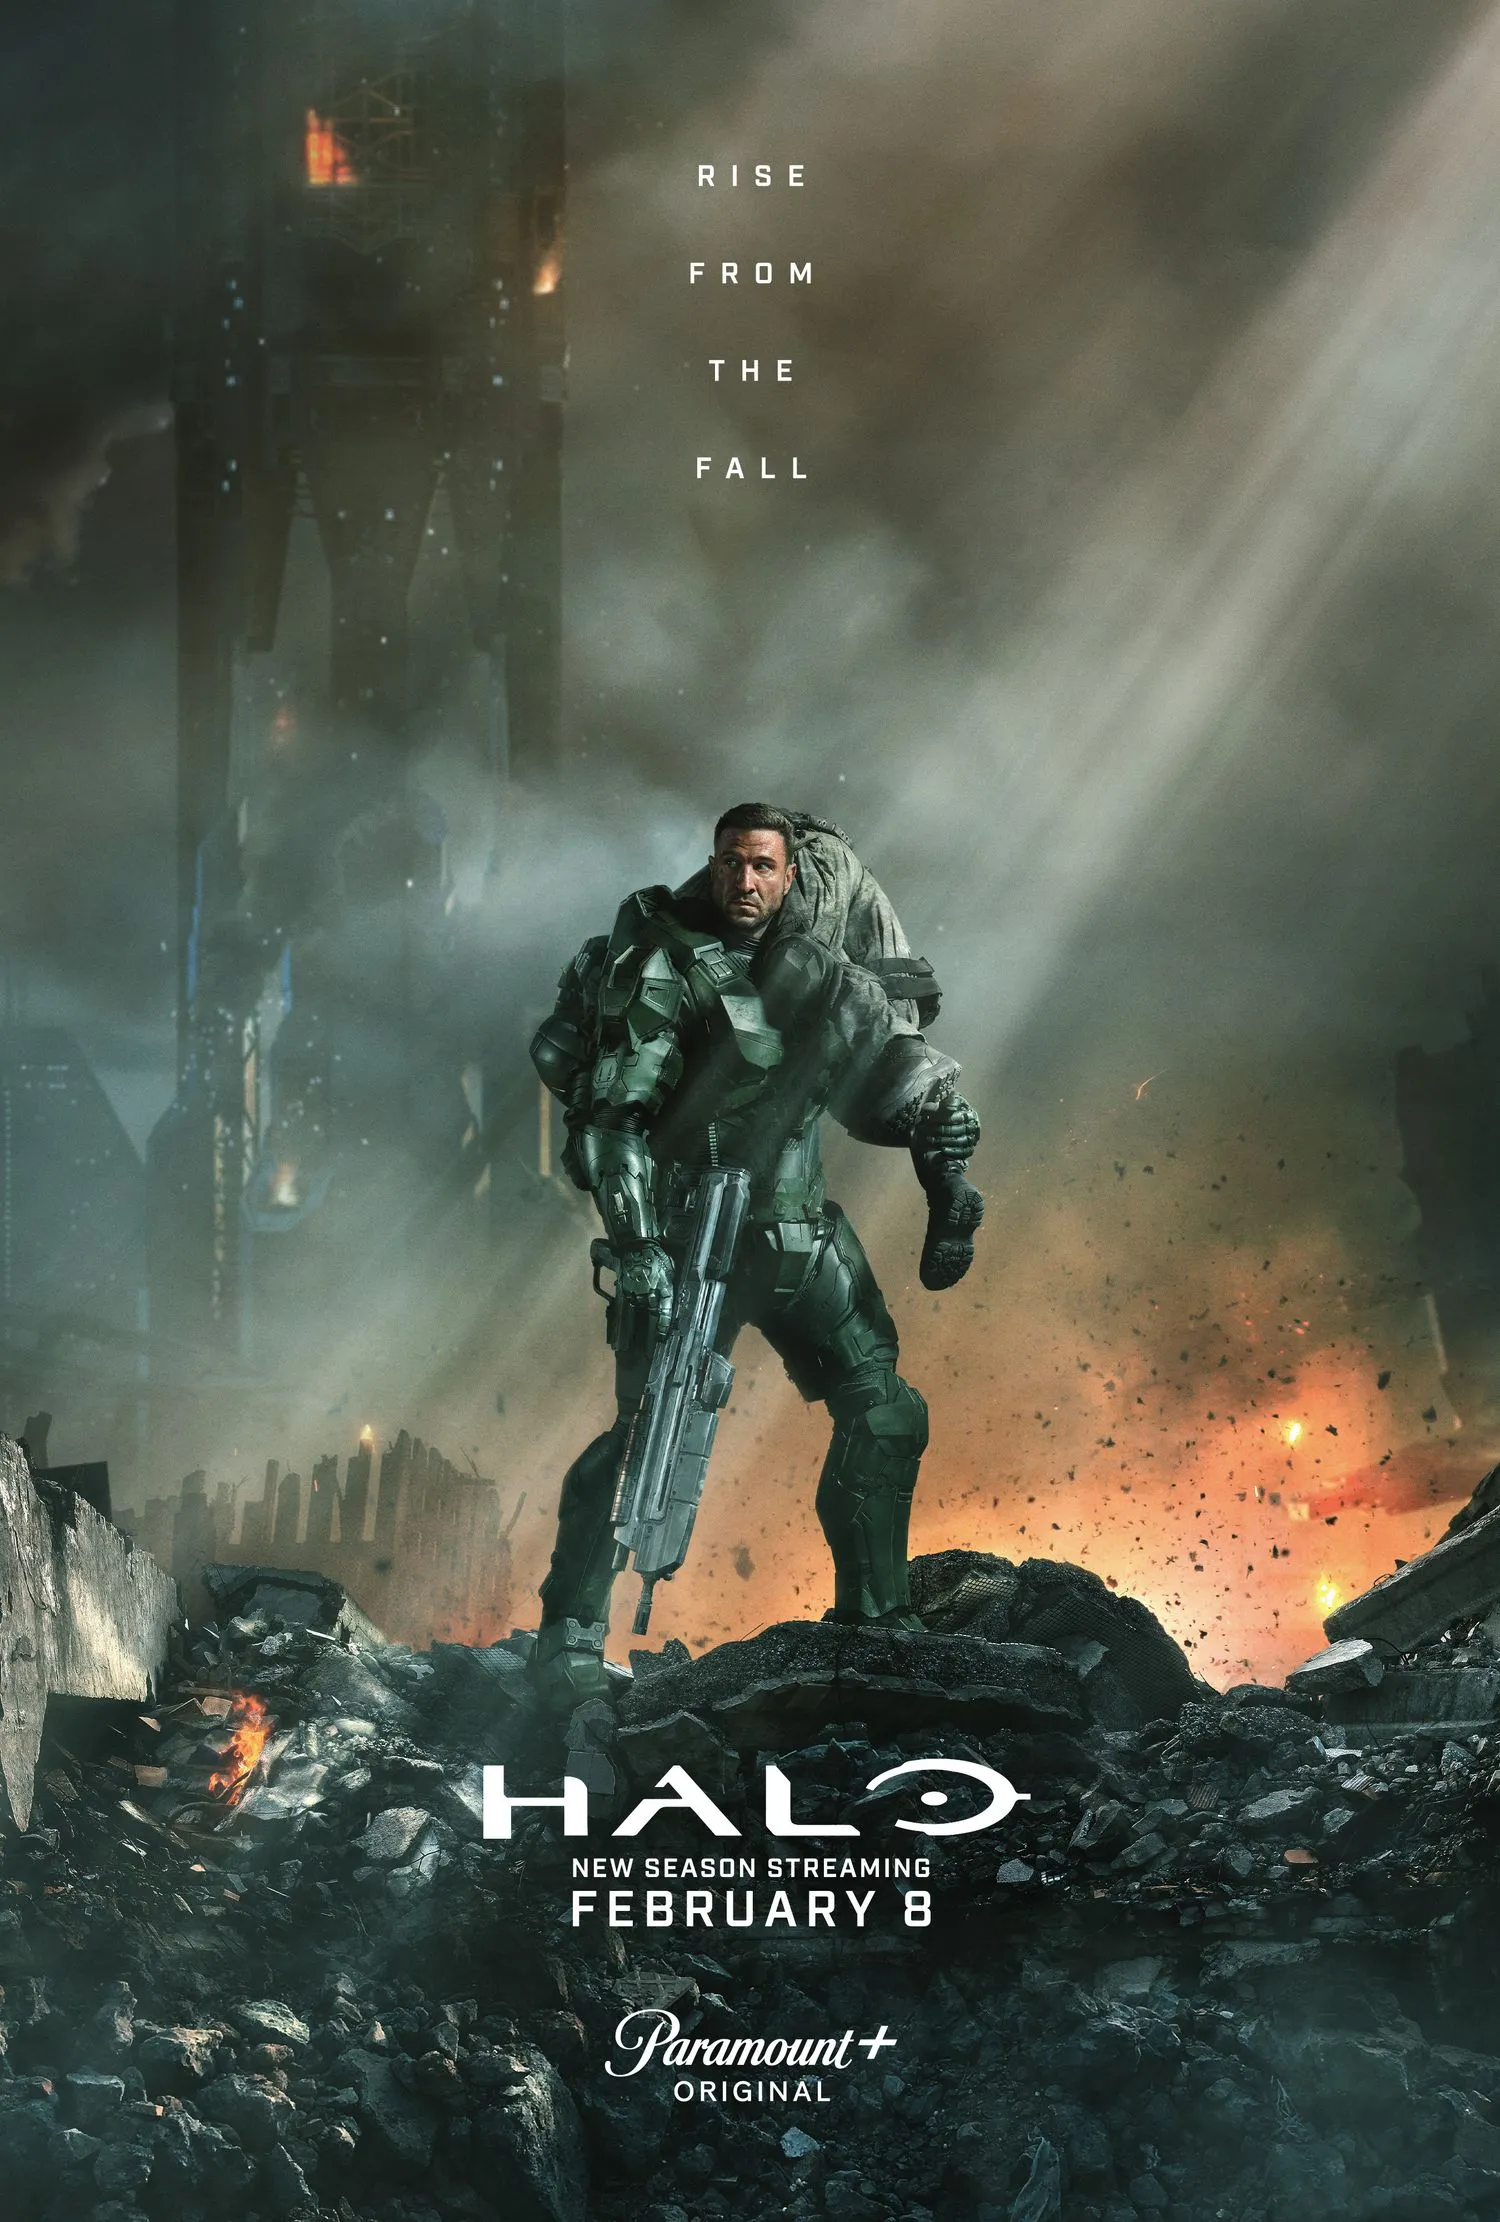 Werbeplakat für Halo Staffel 2, das einen Mann in einer futuristischen grünen Rüstung in einer zerbombten Stadt zeigt.